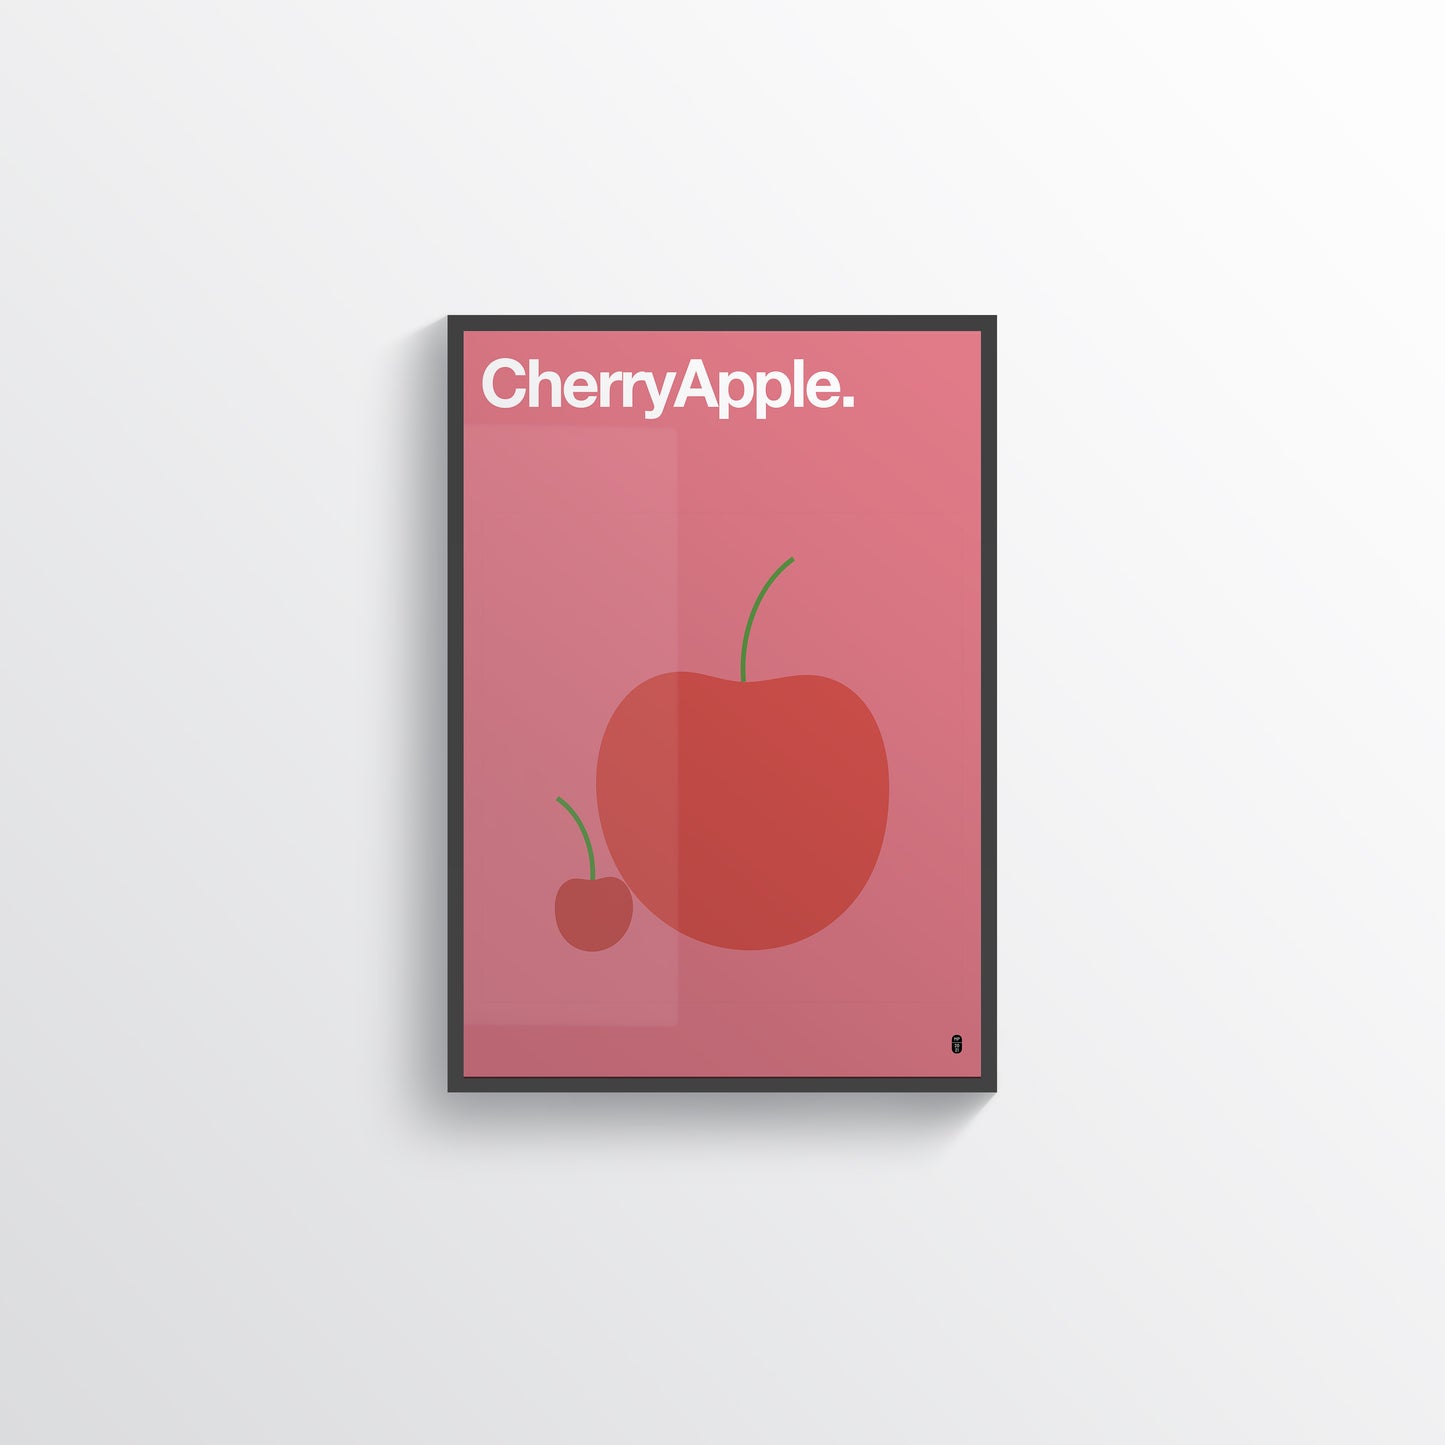 CherryApple